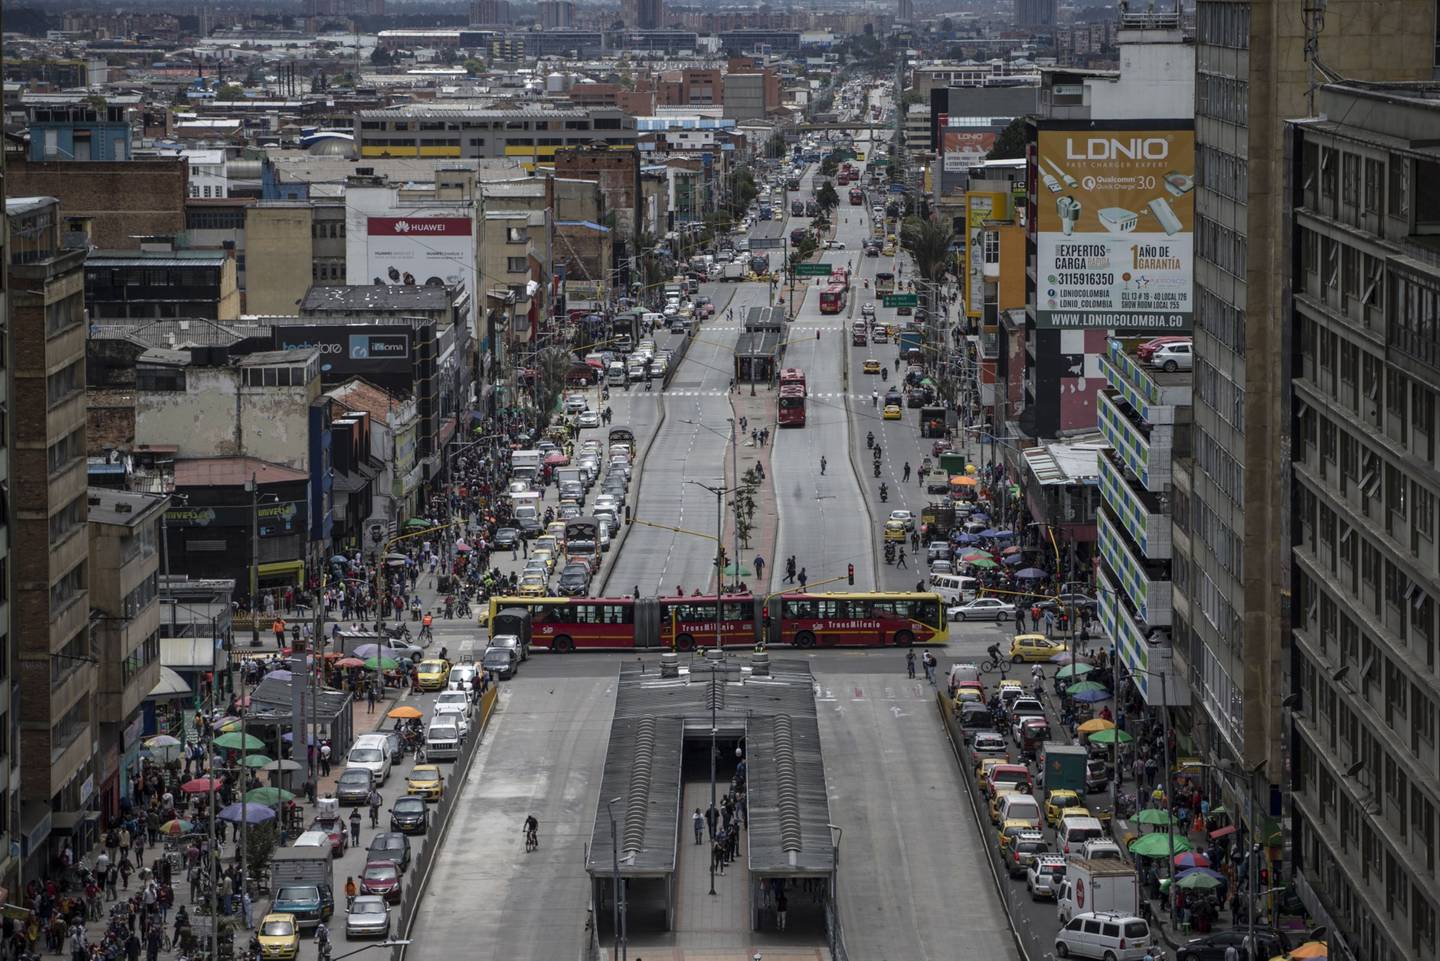 Una calle de la Avenida Jiménez casi vacía en Bogotá, Colombia, el jueves 27 de agosto de 2020.dfd